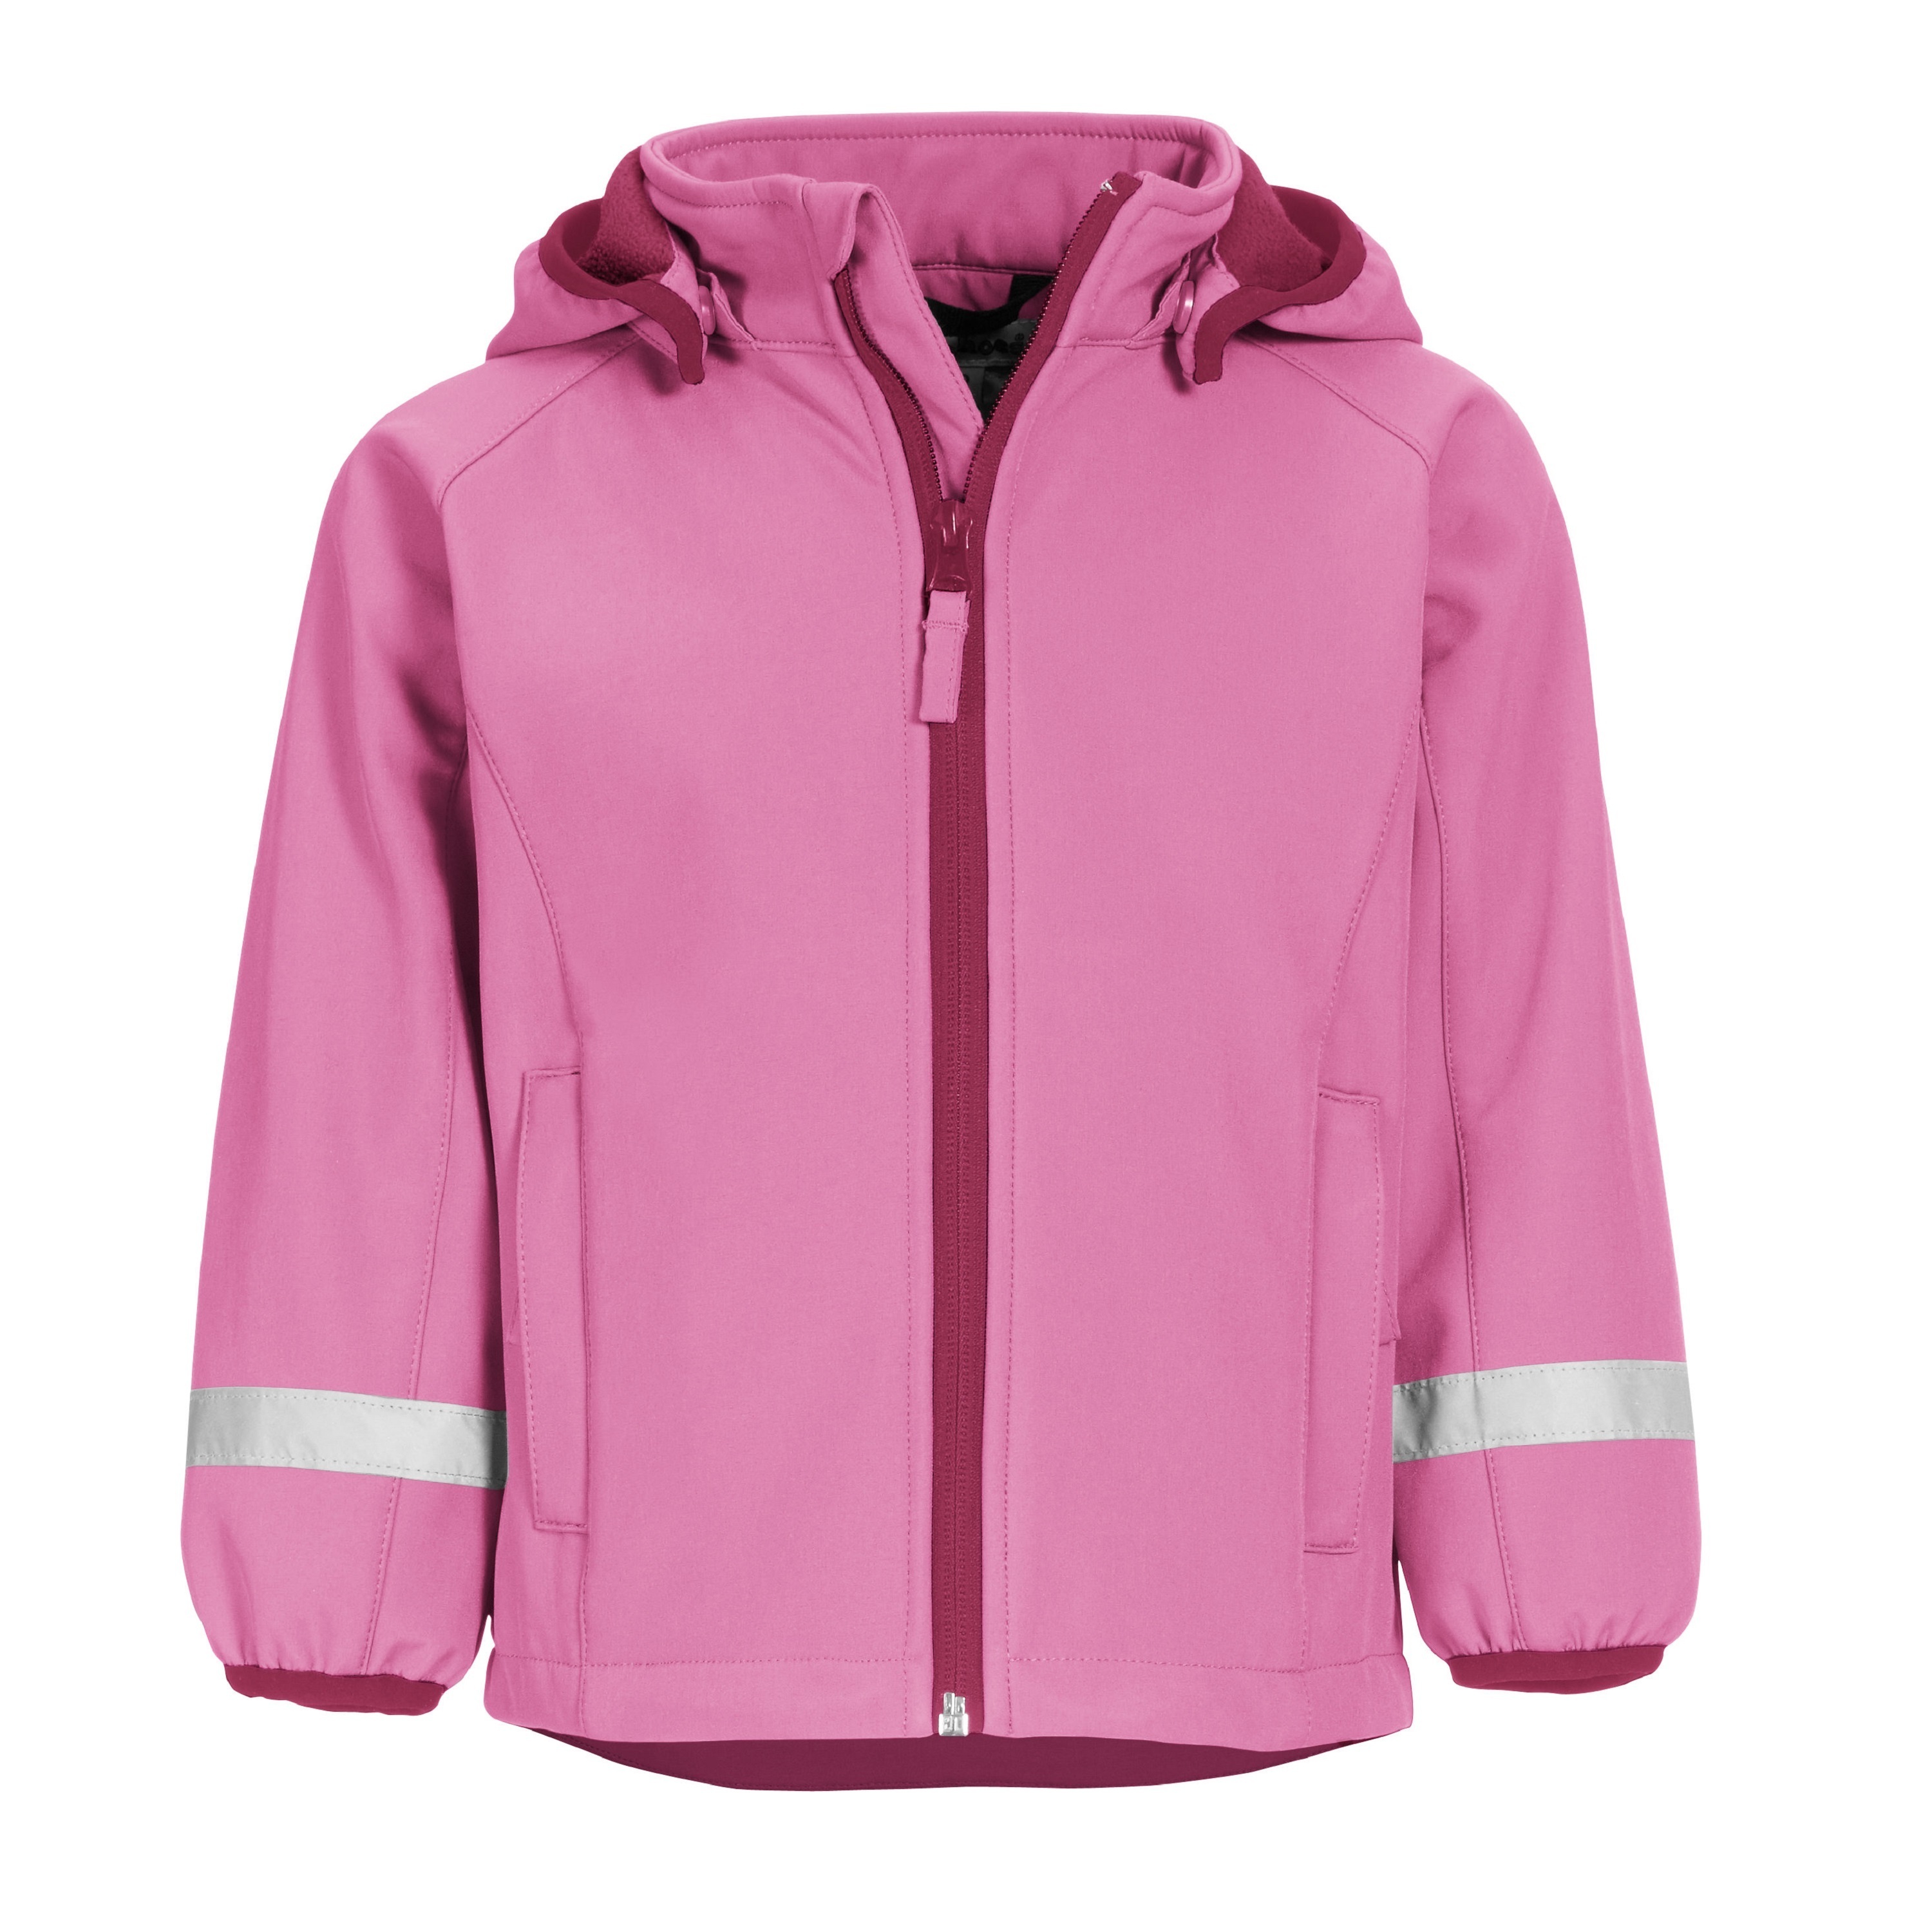 Куртка детская Playshoes 430110, розовый, 116 халат пончо сова playshoes розовый